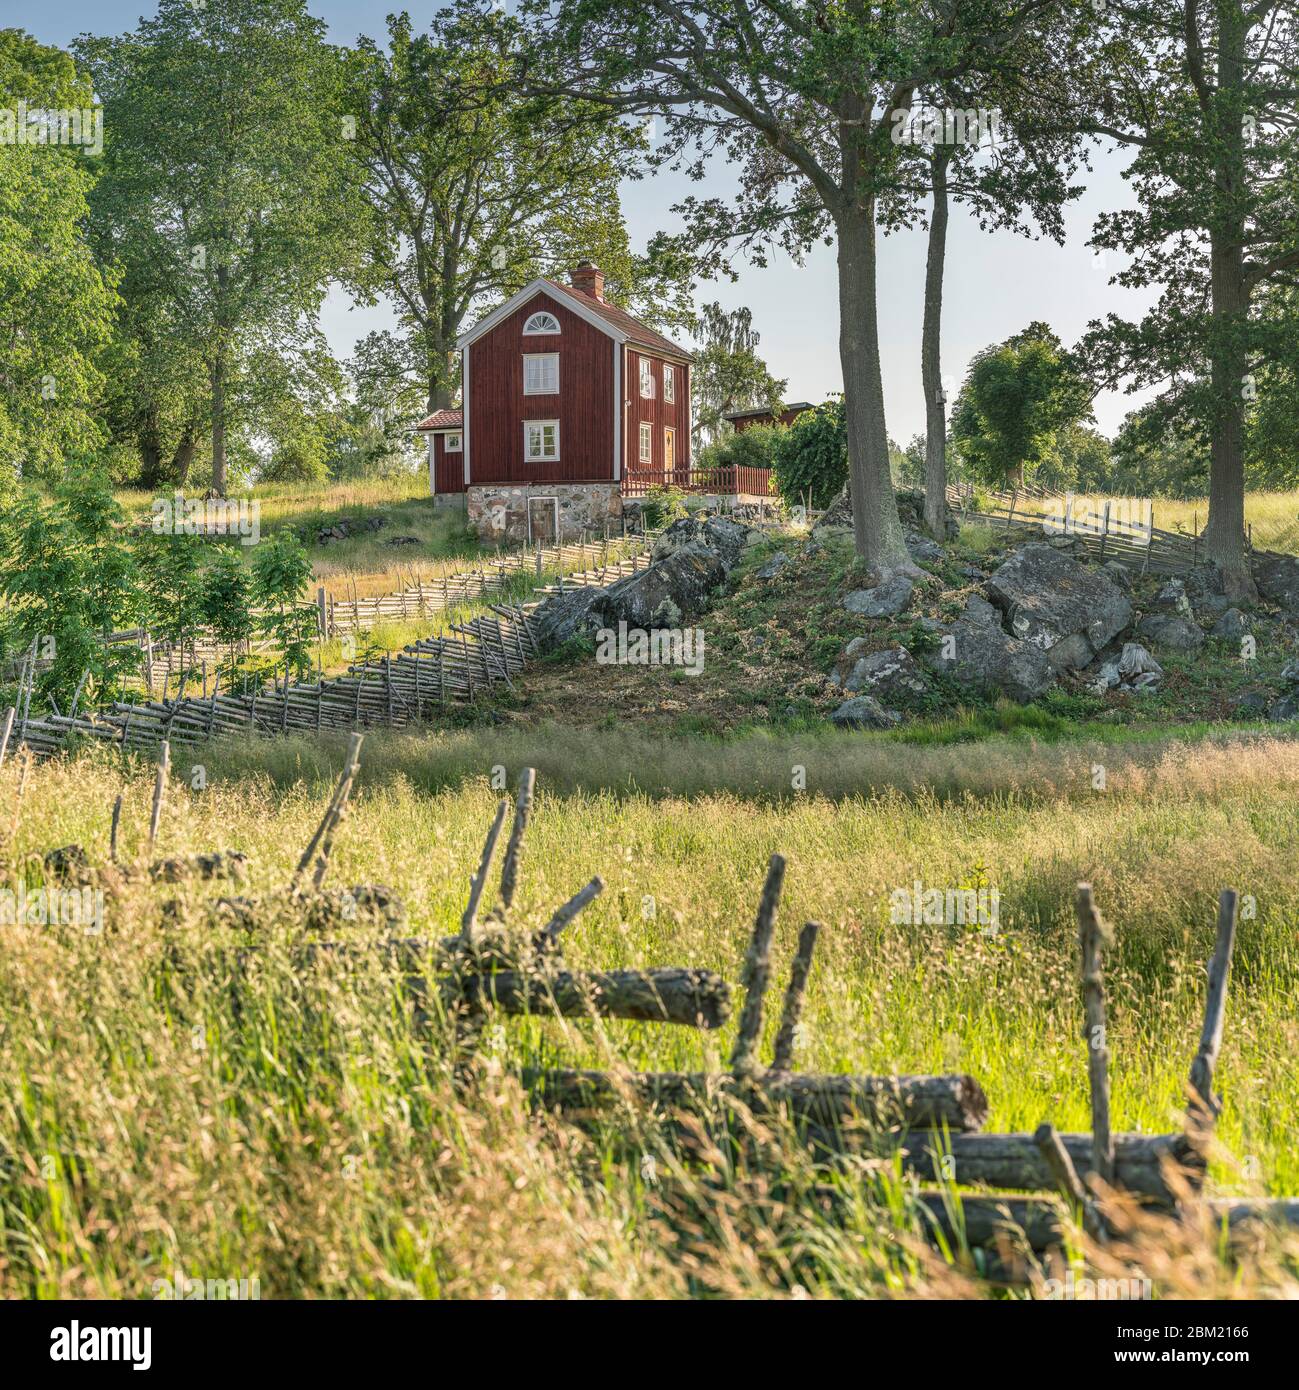 Petite route de campagne et vieux cottages traditionnels rouges dans un paysage rural au village Stensjo by. Oskarshamn, Smaland, Suède, Scandinavie Banque D'Images